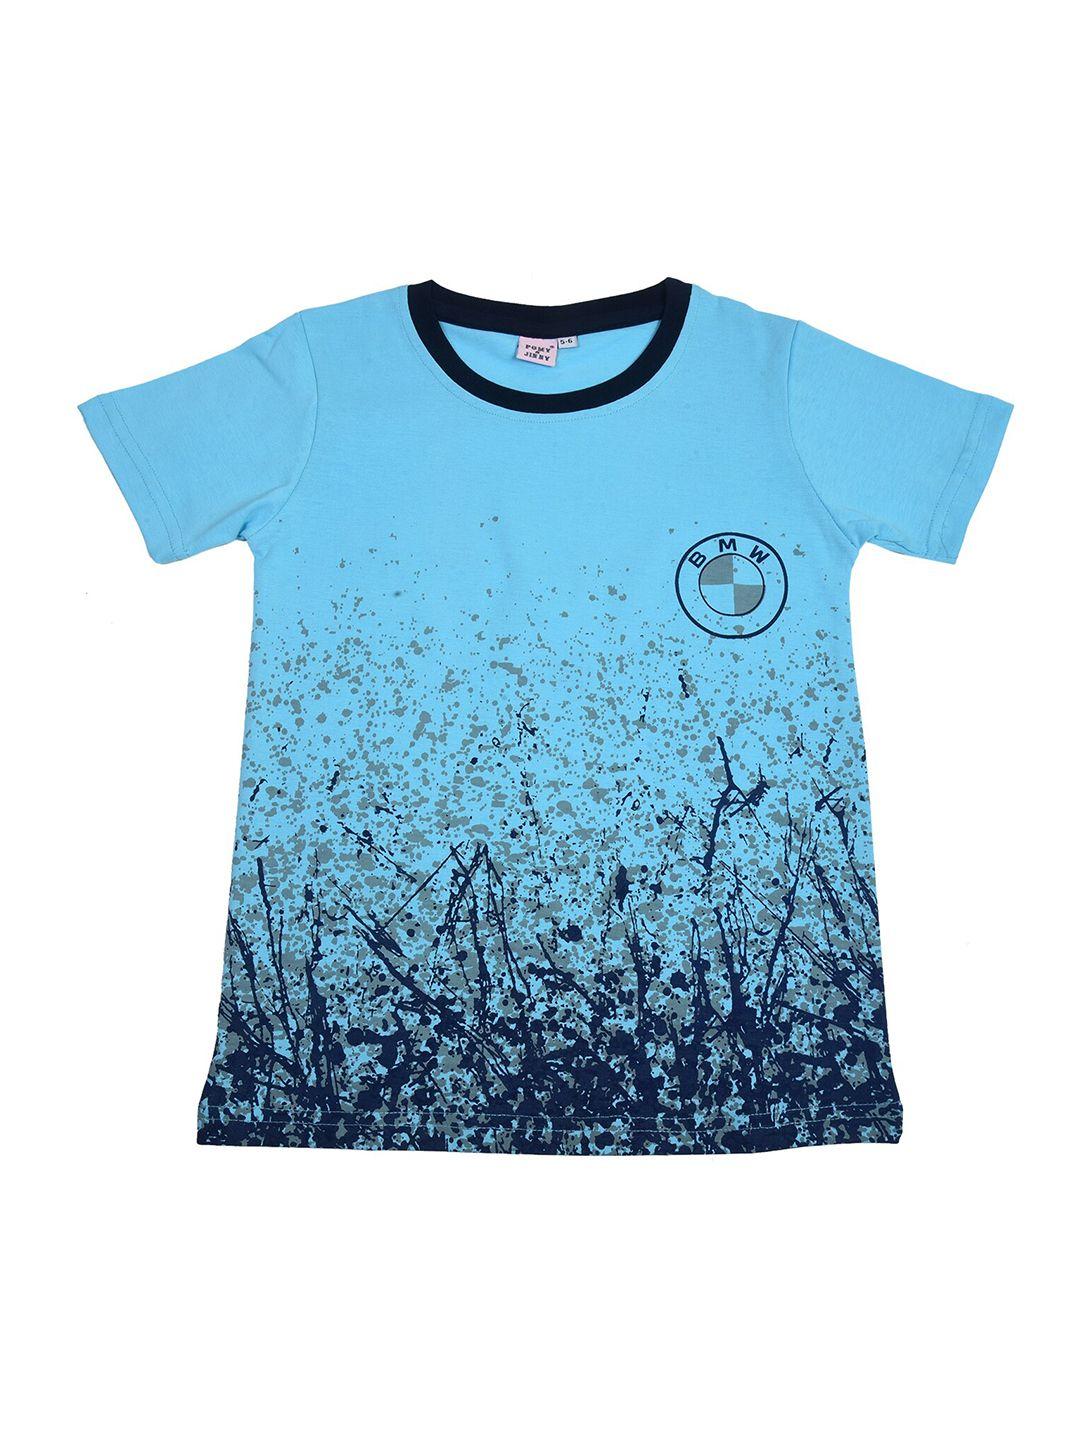 pomy & jinny boys turquoise blue printed slim fit t-shirt